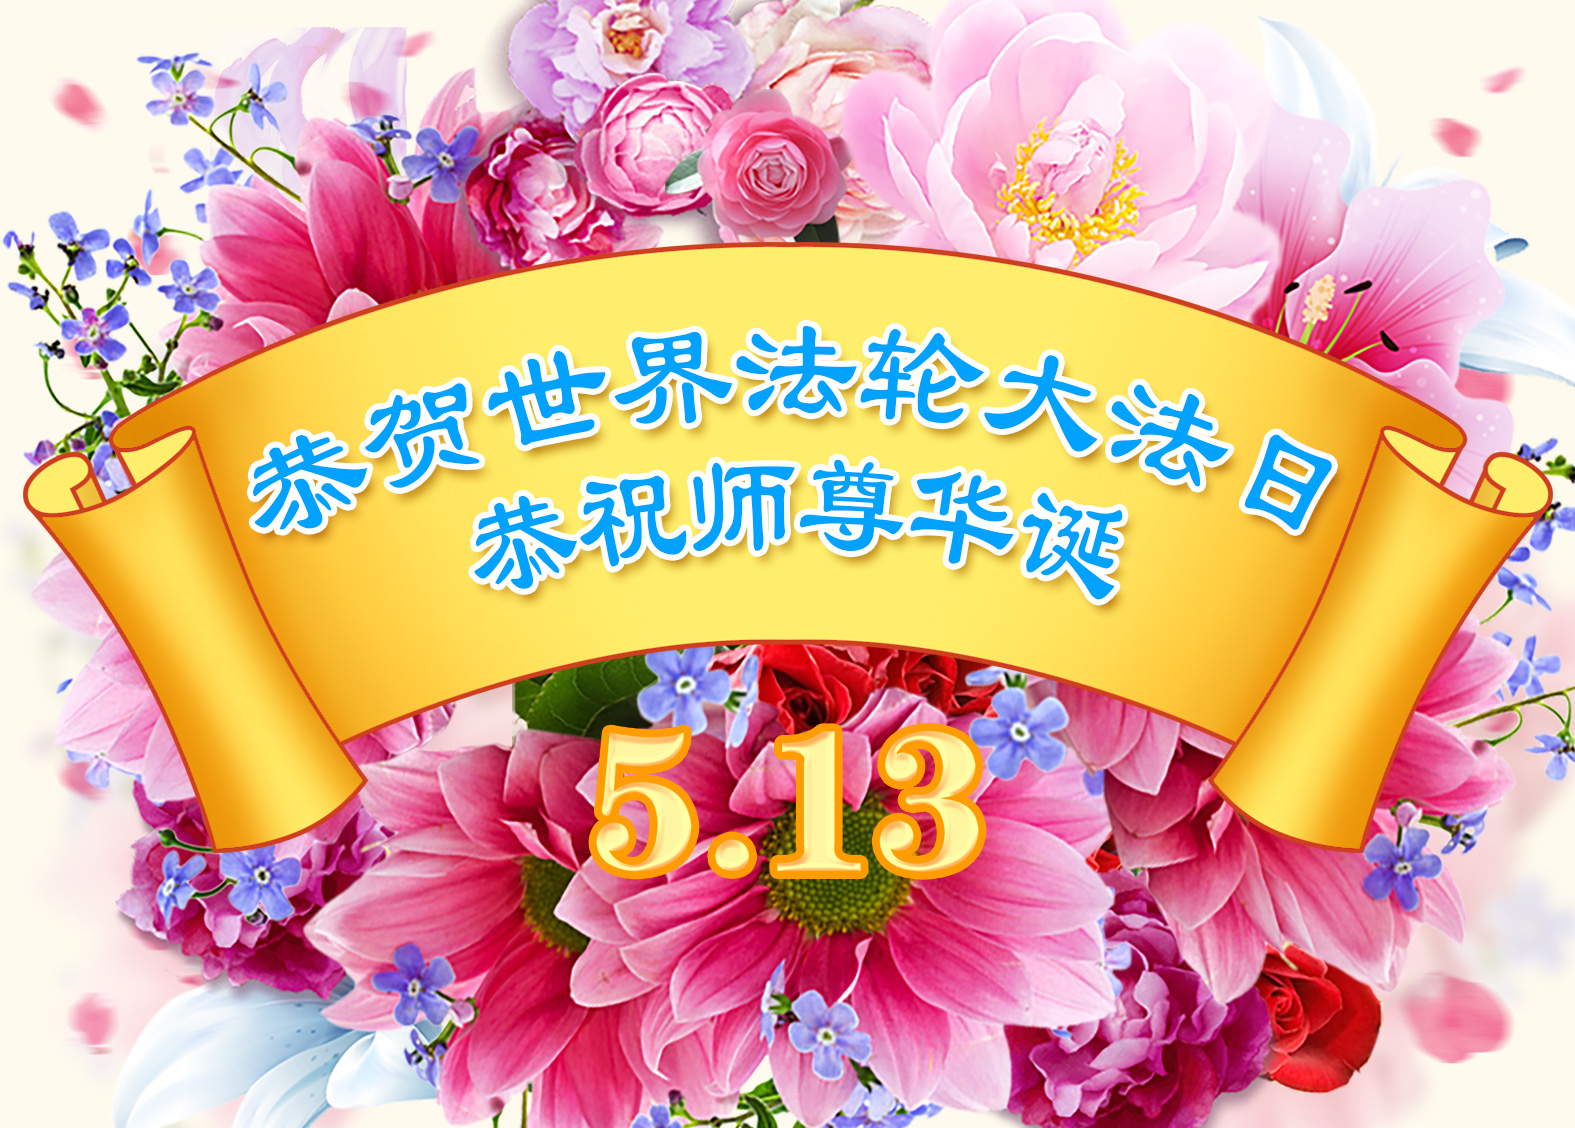 Image for article [Dünya Falun Dafa Günü Kutlaması] Hayat Kısa ve Değerli